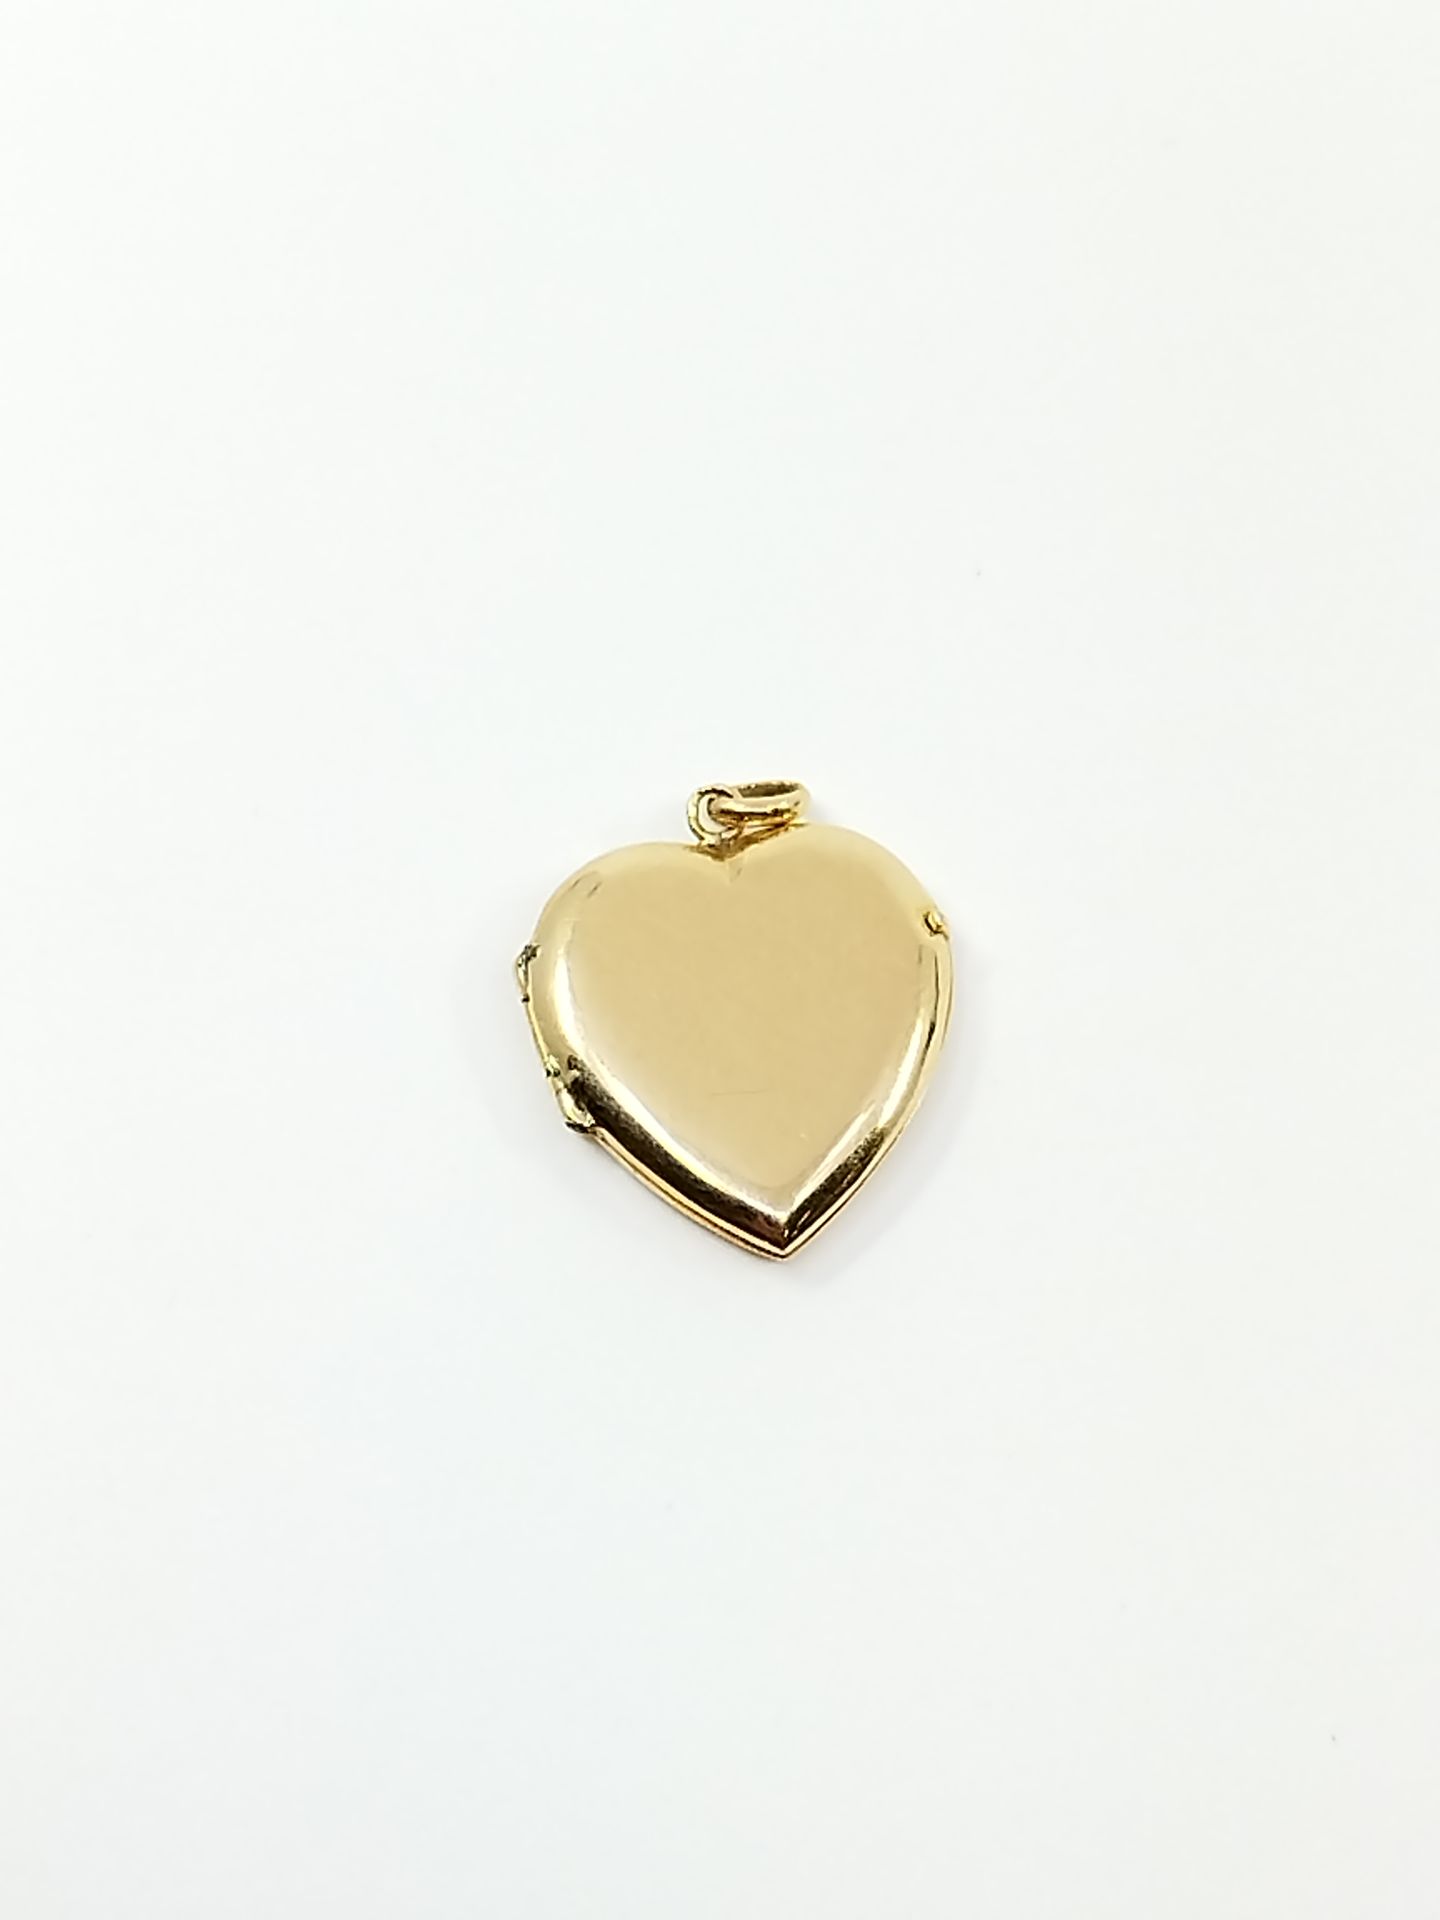 Null Pendente a forma di cuore in oro giallo 750°.

Peso: 2,76 g